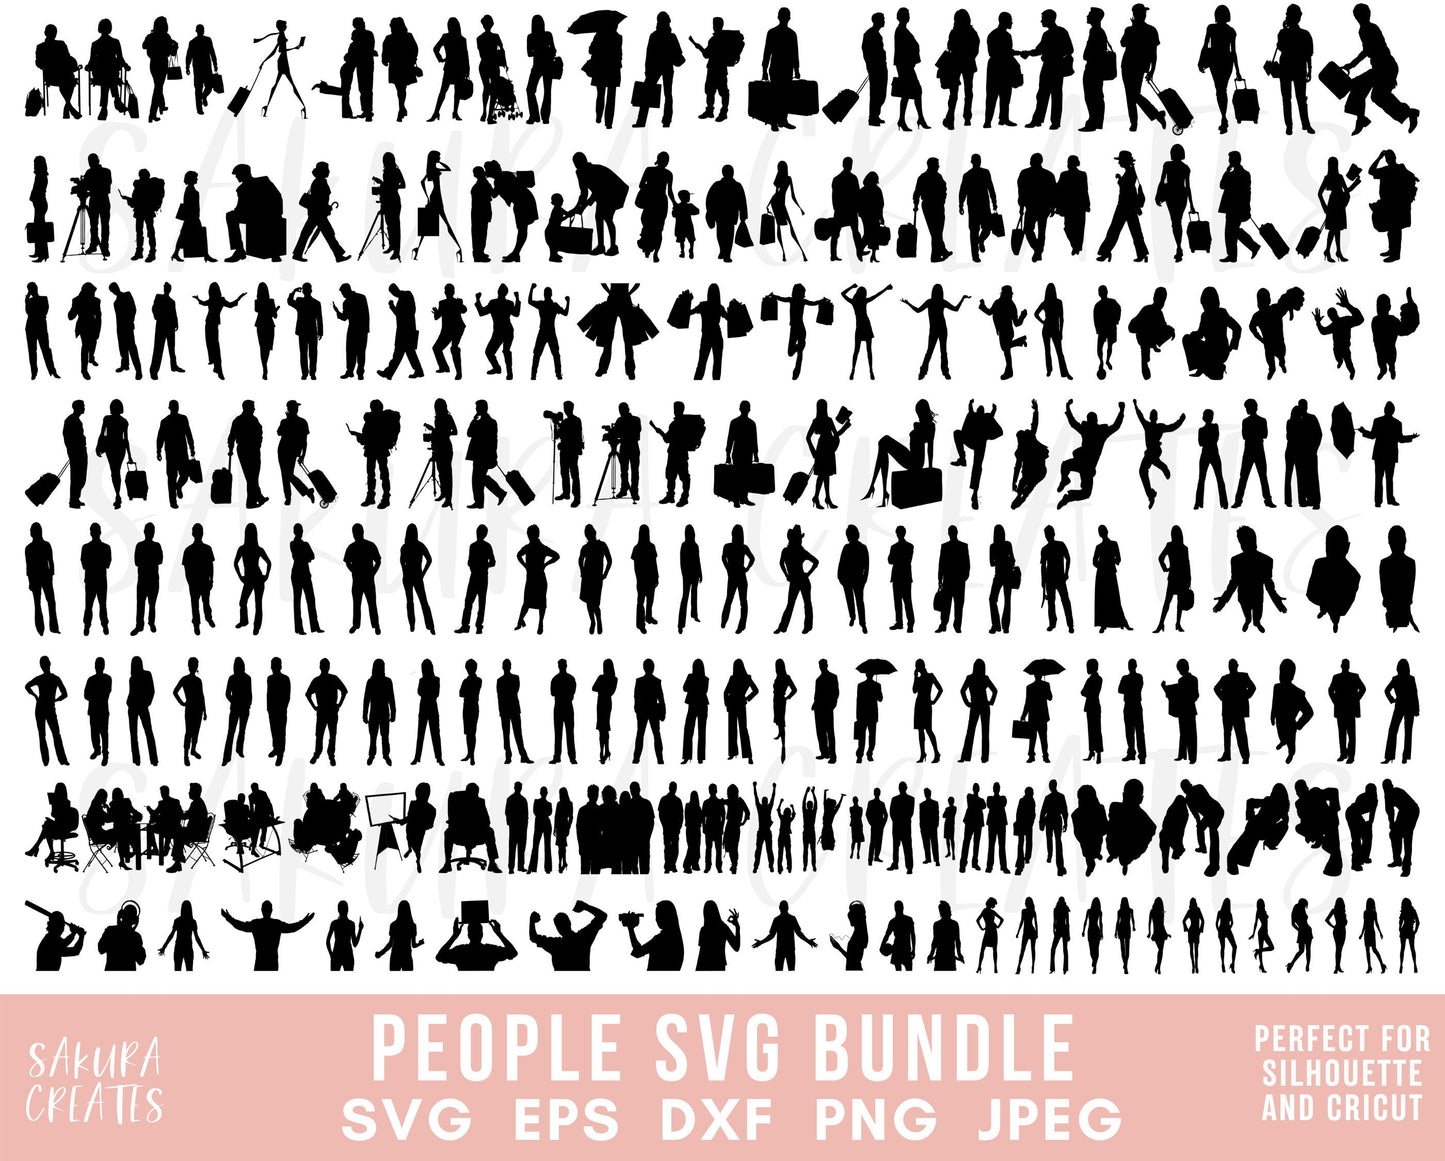 400+ Fashion logo SvG Bundle